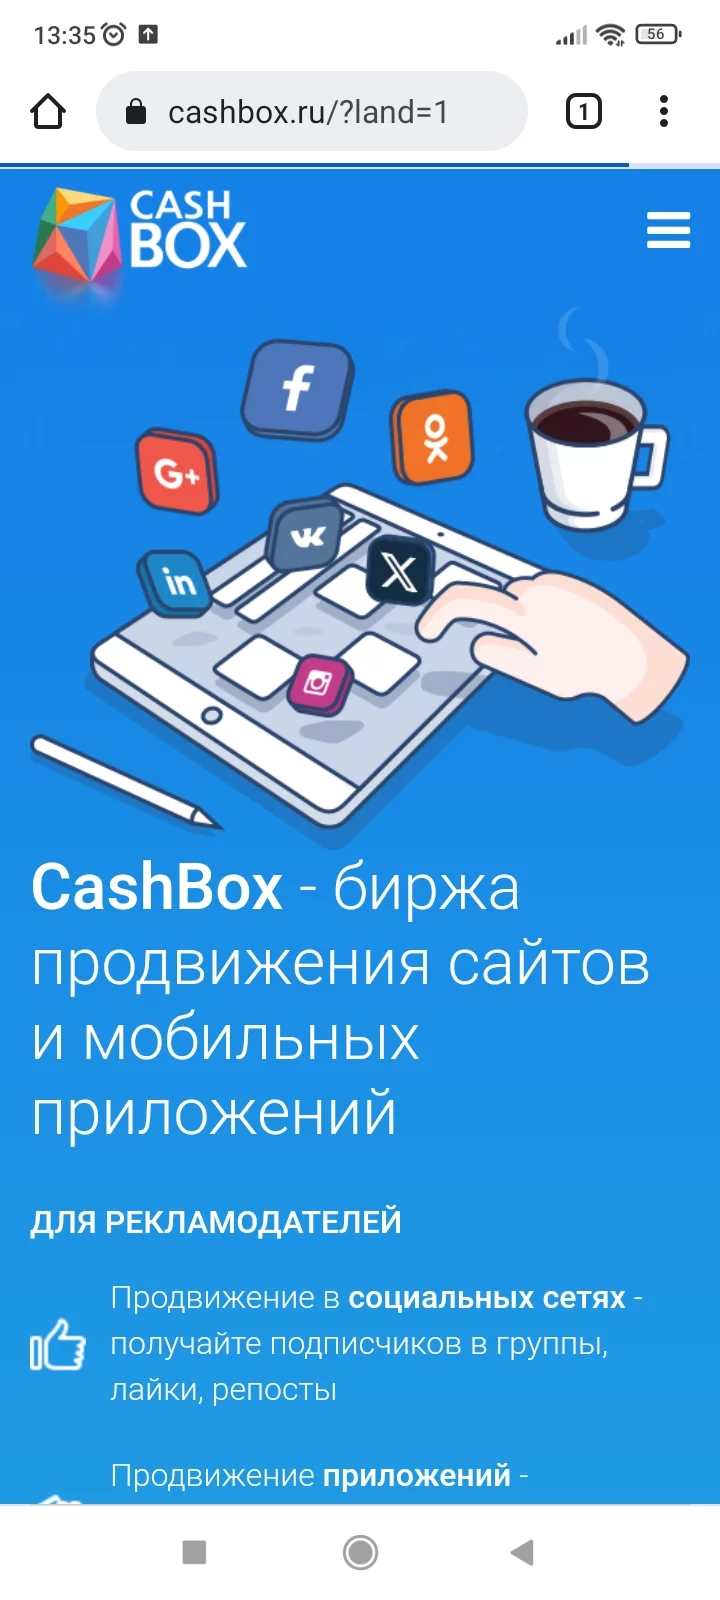 Cashbox.ru